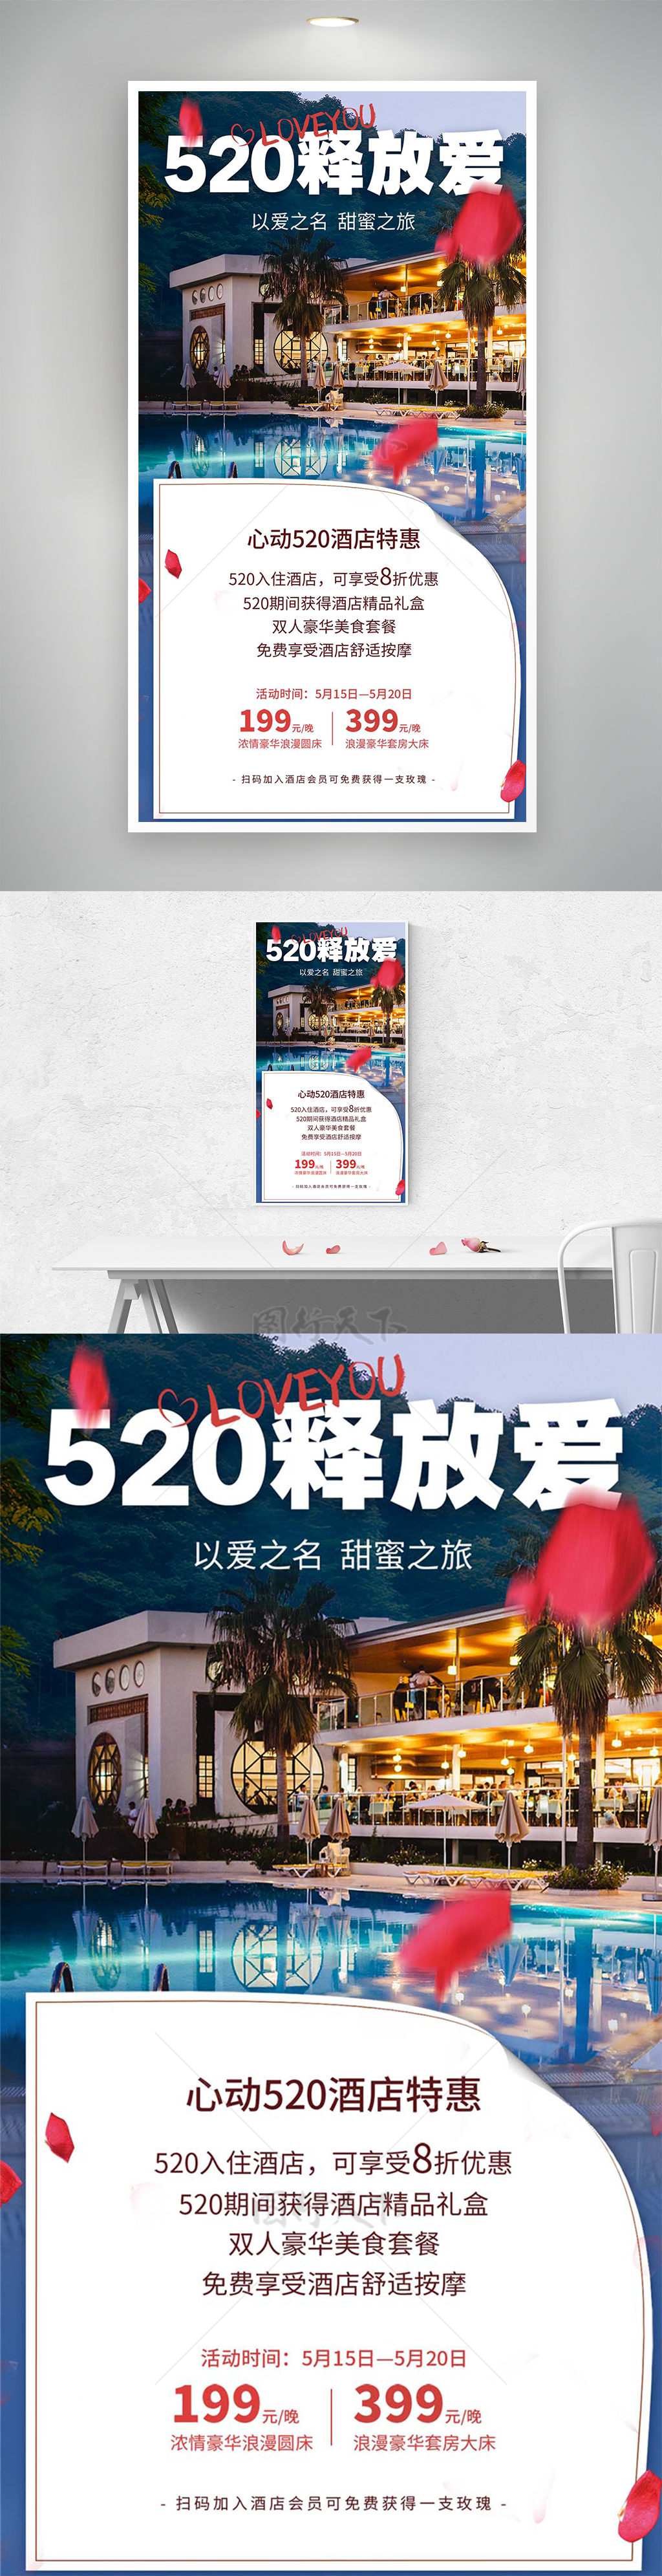 520释放爱主题情人节活动促销海报